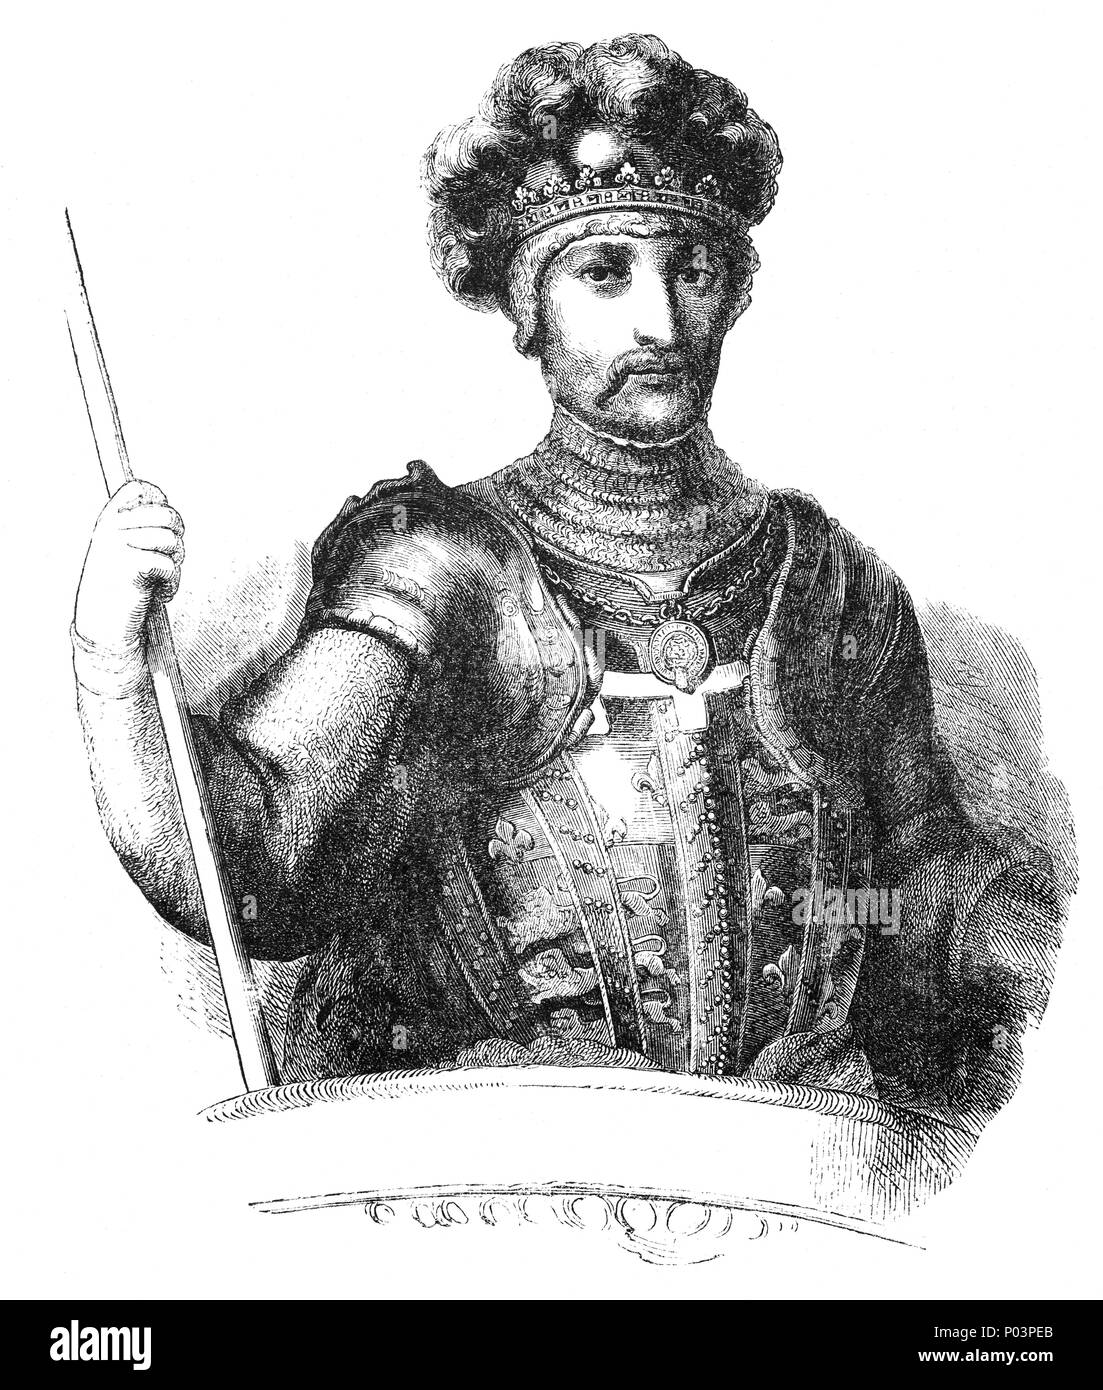 Édouard de Woodstock, connu comme le Prince Noir (1330-1376), était le fils aîné d'Édouard III, roi d'Angleterre, et de Philippa de Hainaut et a participé dans les premières années de la guerre de Cent Ans. Il meurt avant son père et n'est jamais devenu roi. Son fils, Richard II, a réussi à la place. Banque D'Images